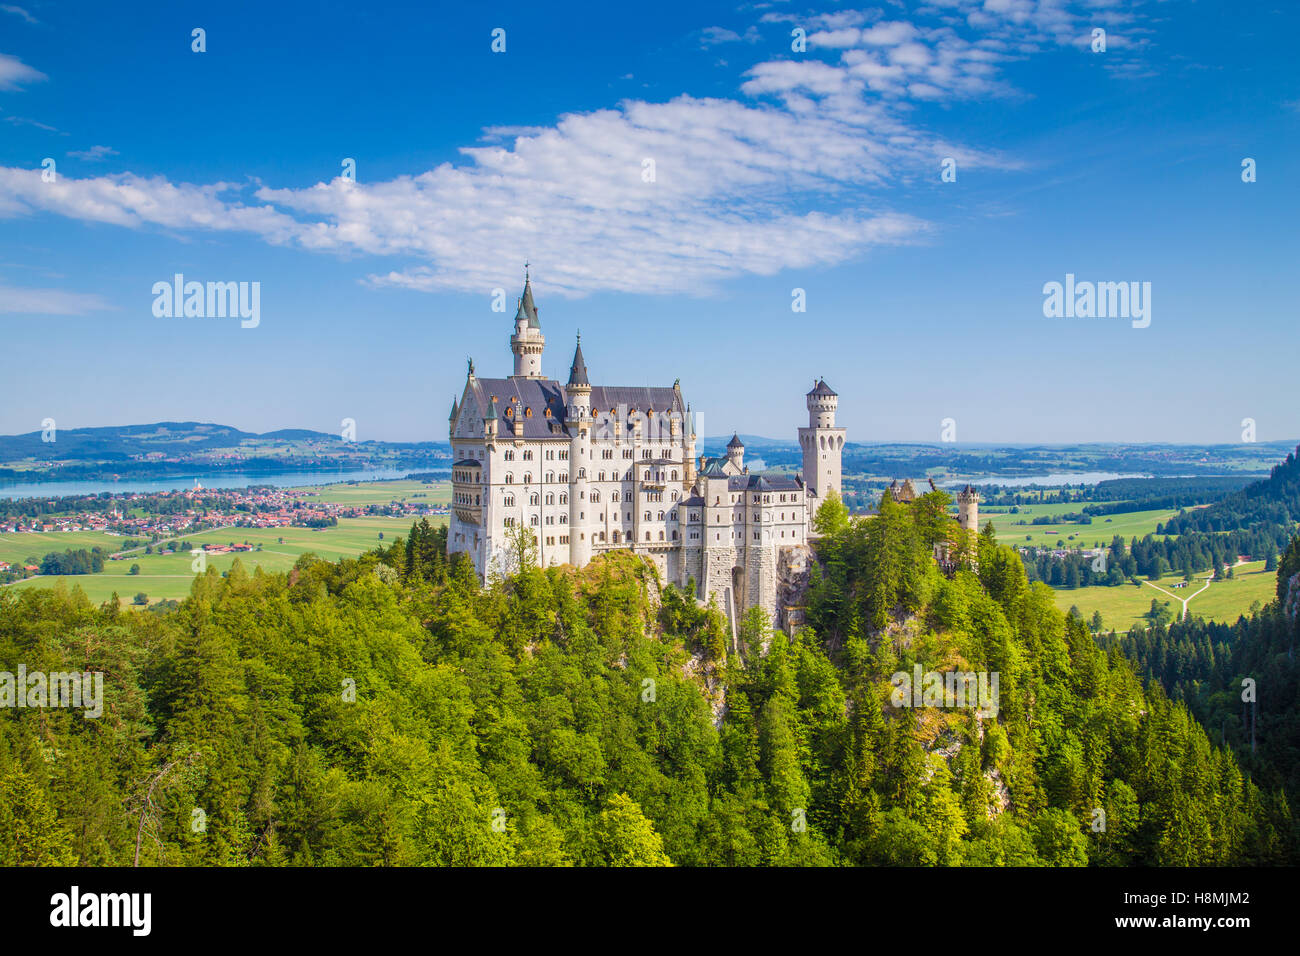 La vue classique du célèbre château de Neuschwanstein, l'un des châteaux les plus visités d'Europe, sur une belle journée ensoleillée en été, Bavière, Allemagne Banque D'Images